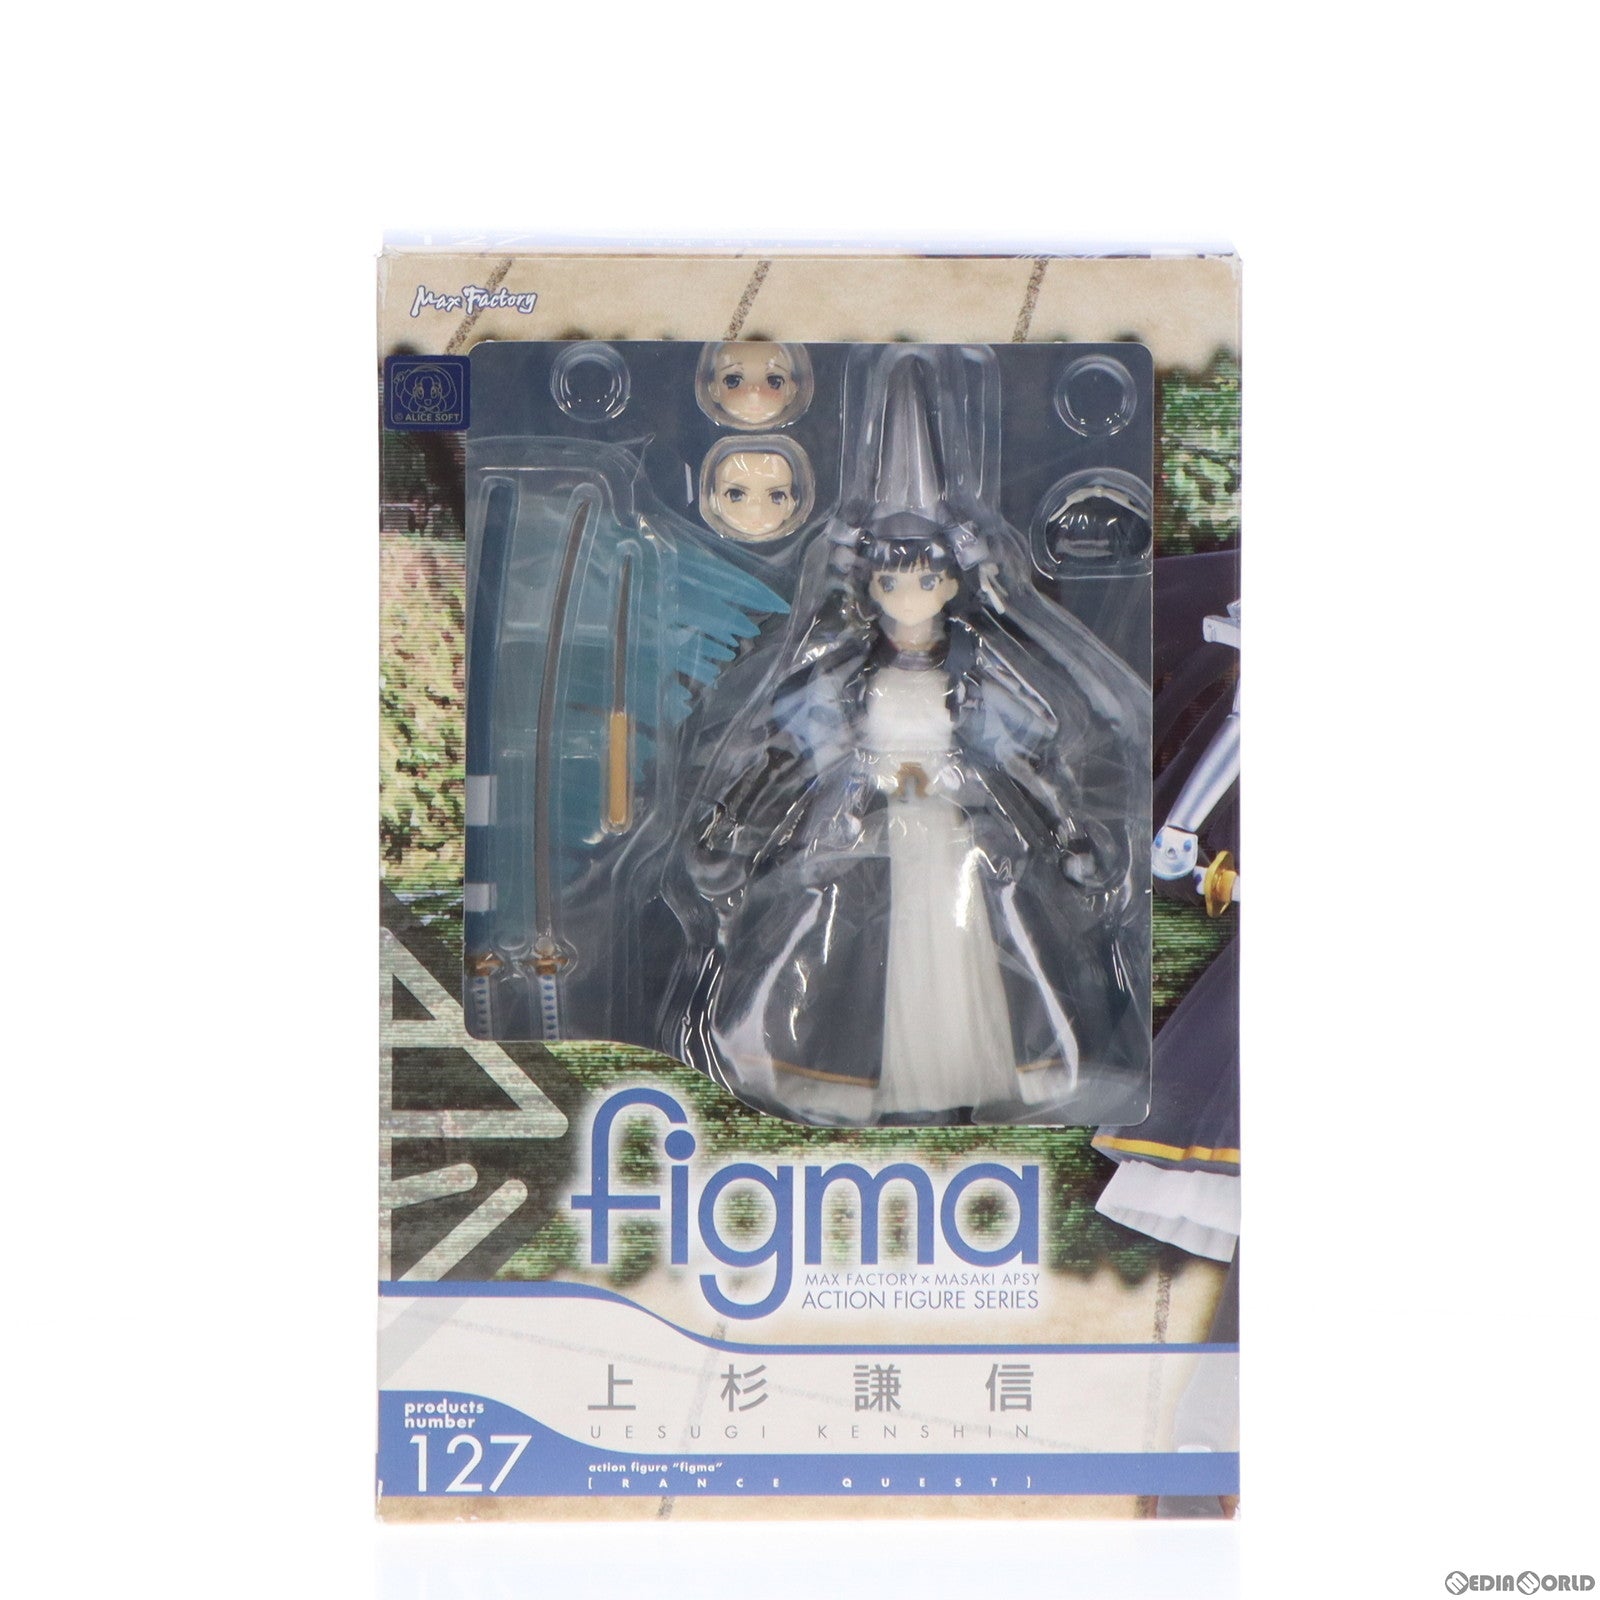 【中古即納】[FIG]figma(フィグマ) 127 上杉謙信(うえすぎけんしん) ランス・クエスト 完成品 可動フィギュア マックスファクトリー(20120331)